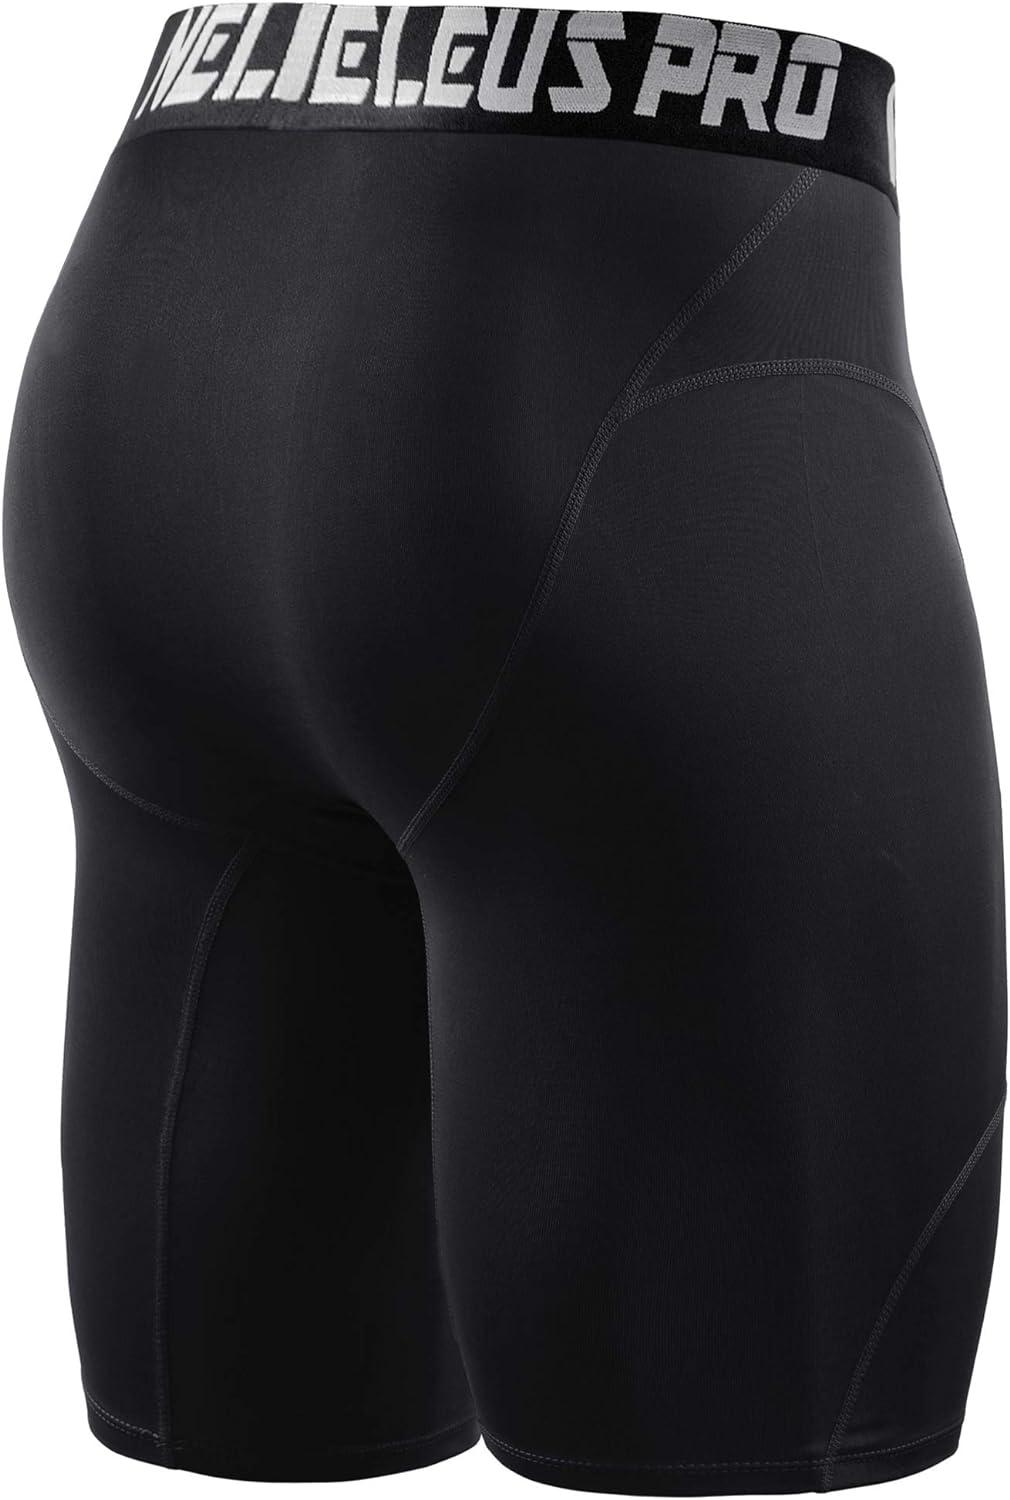 NELEUS Men's 3 Pack Compression Shorts Medium 6065 Black/Black